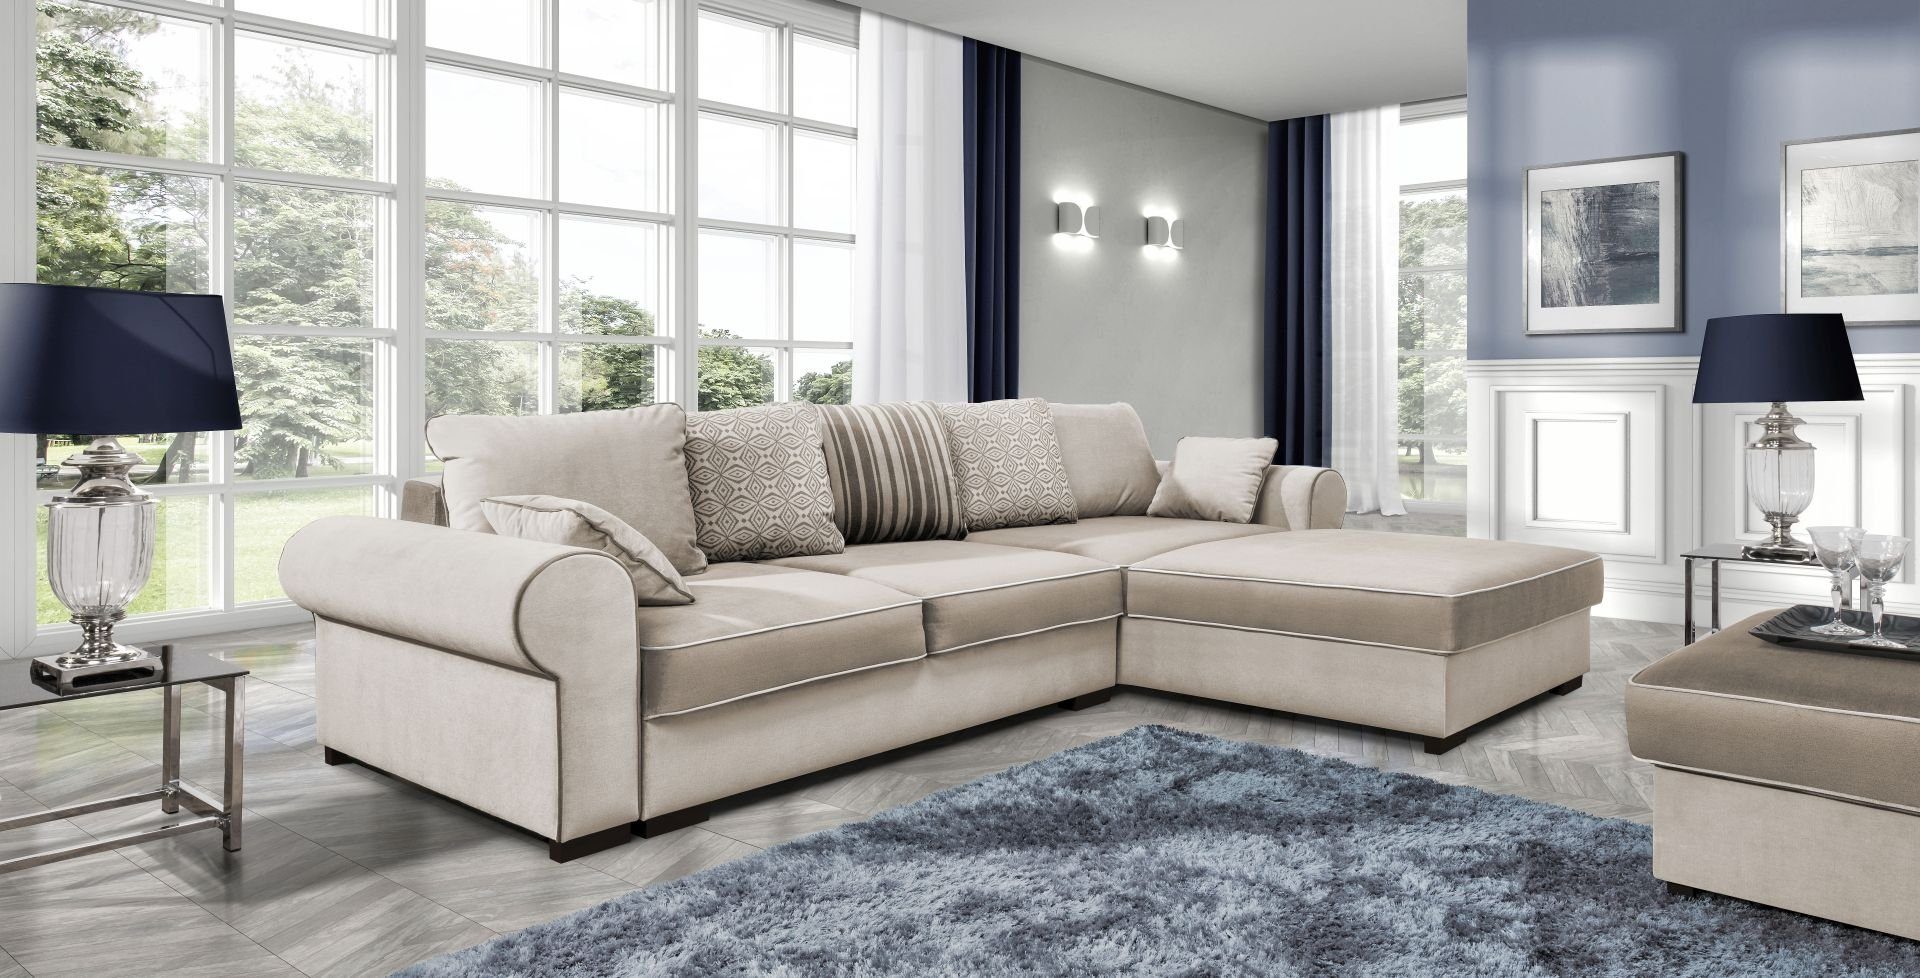 JVmoebel Ecksofa, Stoff L-Form Couch Wohnlandschaft Ecksofa Garnitur Modern Design Sofa Beige | Ecksofas